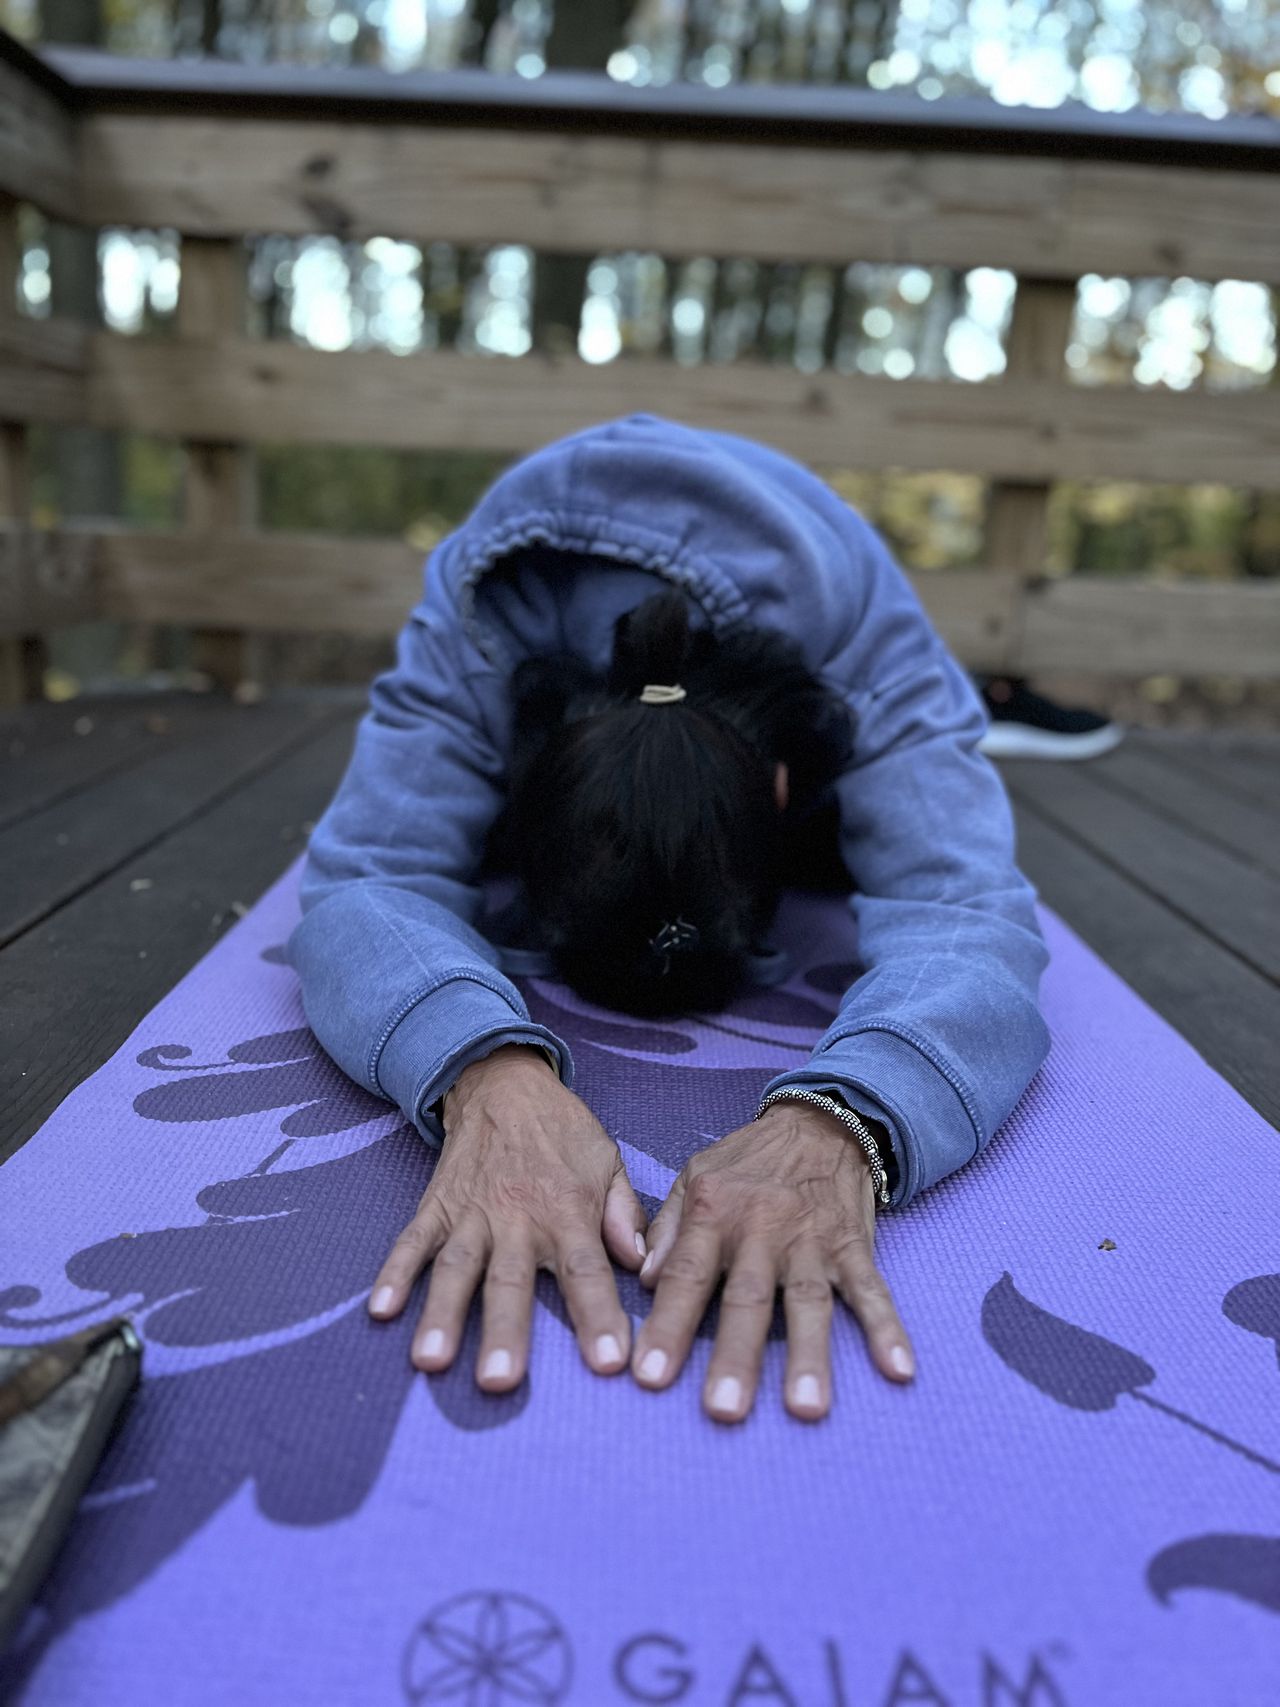 Empresario de Staten Island organiza retiros internacionales de bienestar, une a extraños con yoga y viajes en grupo